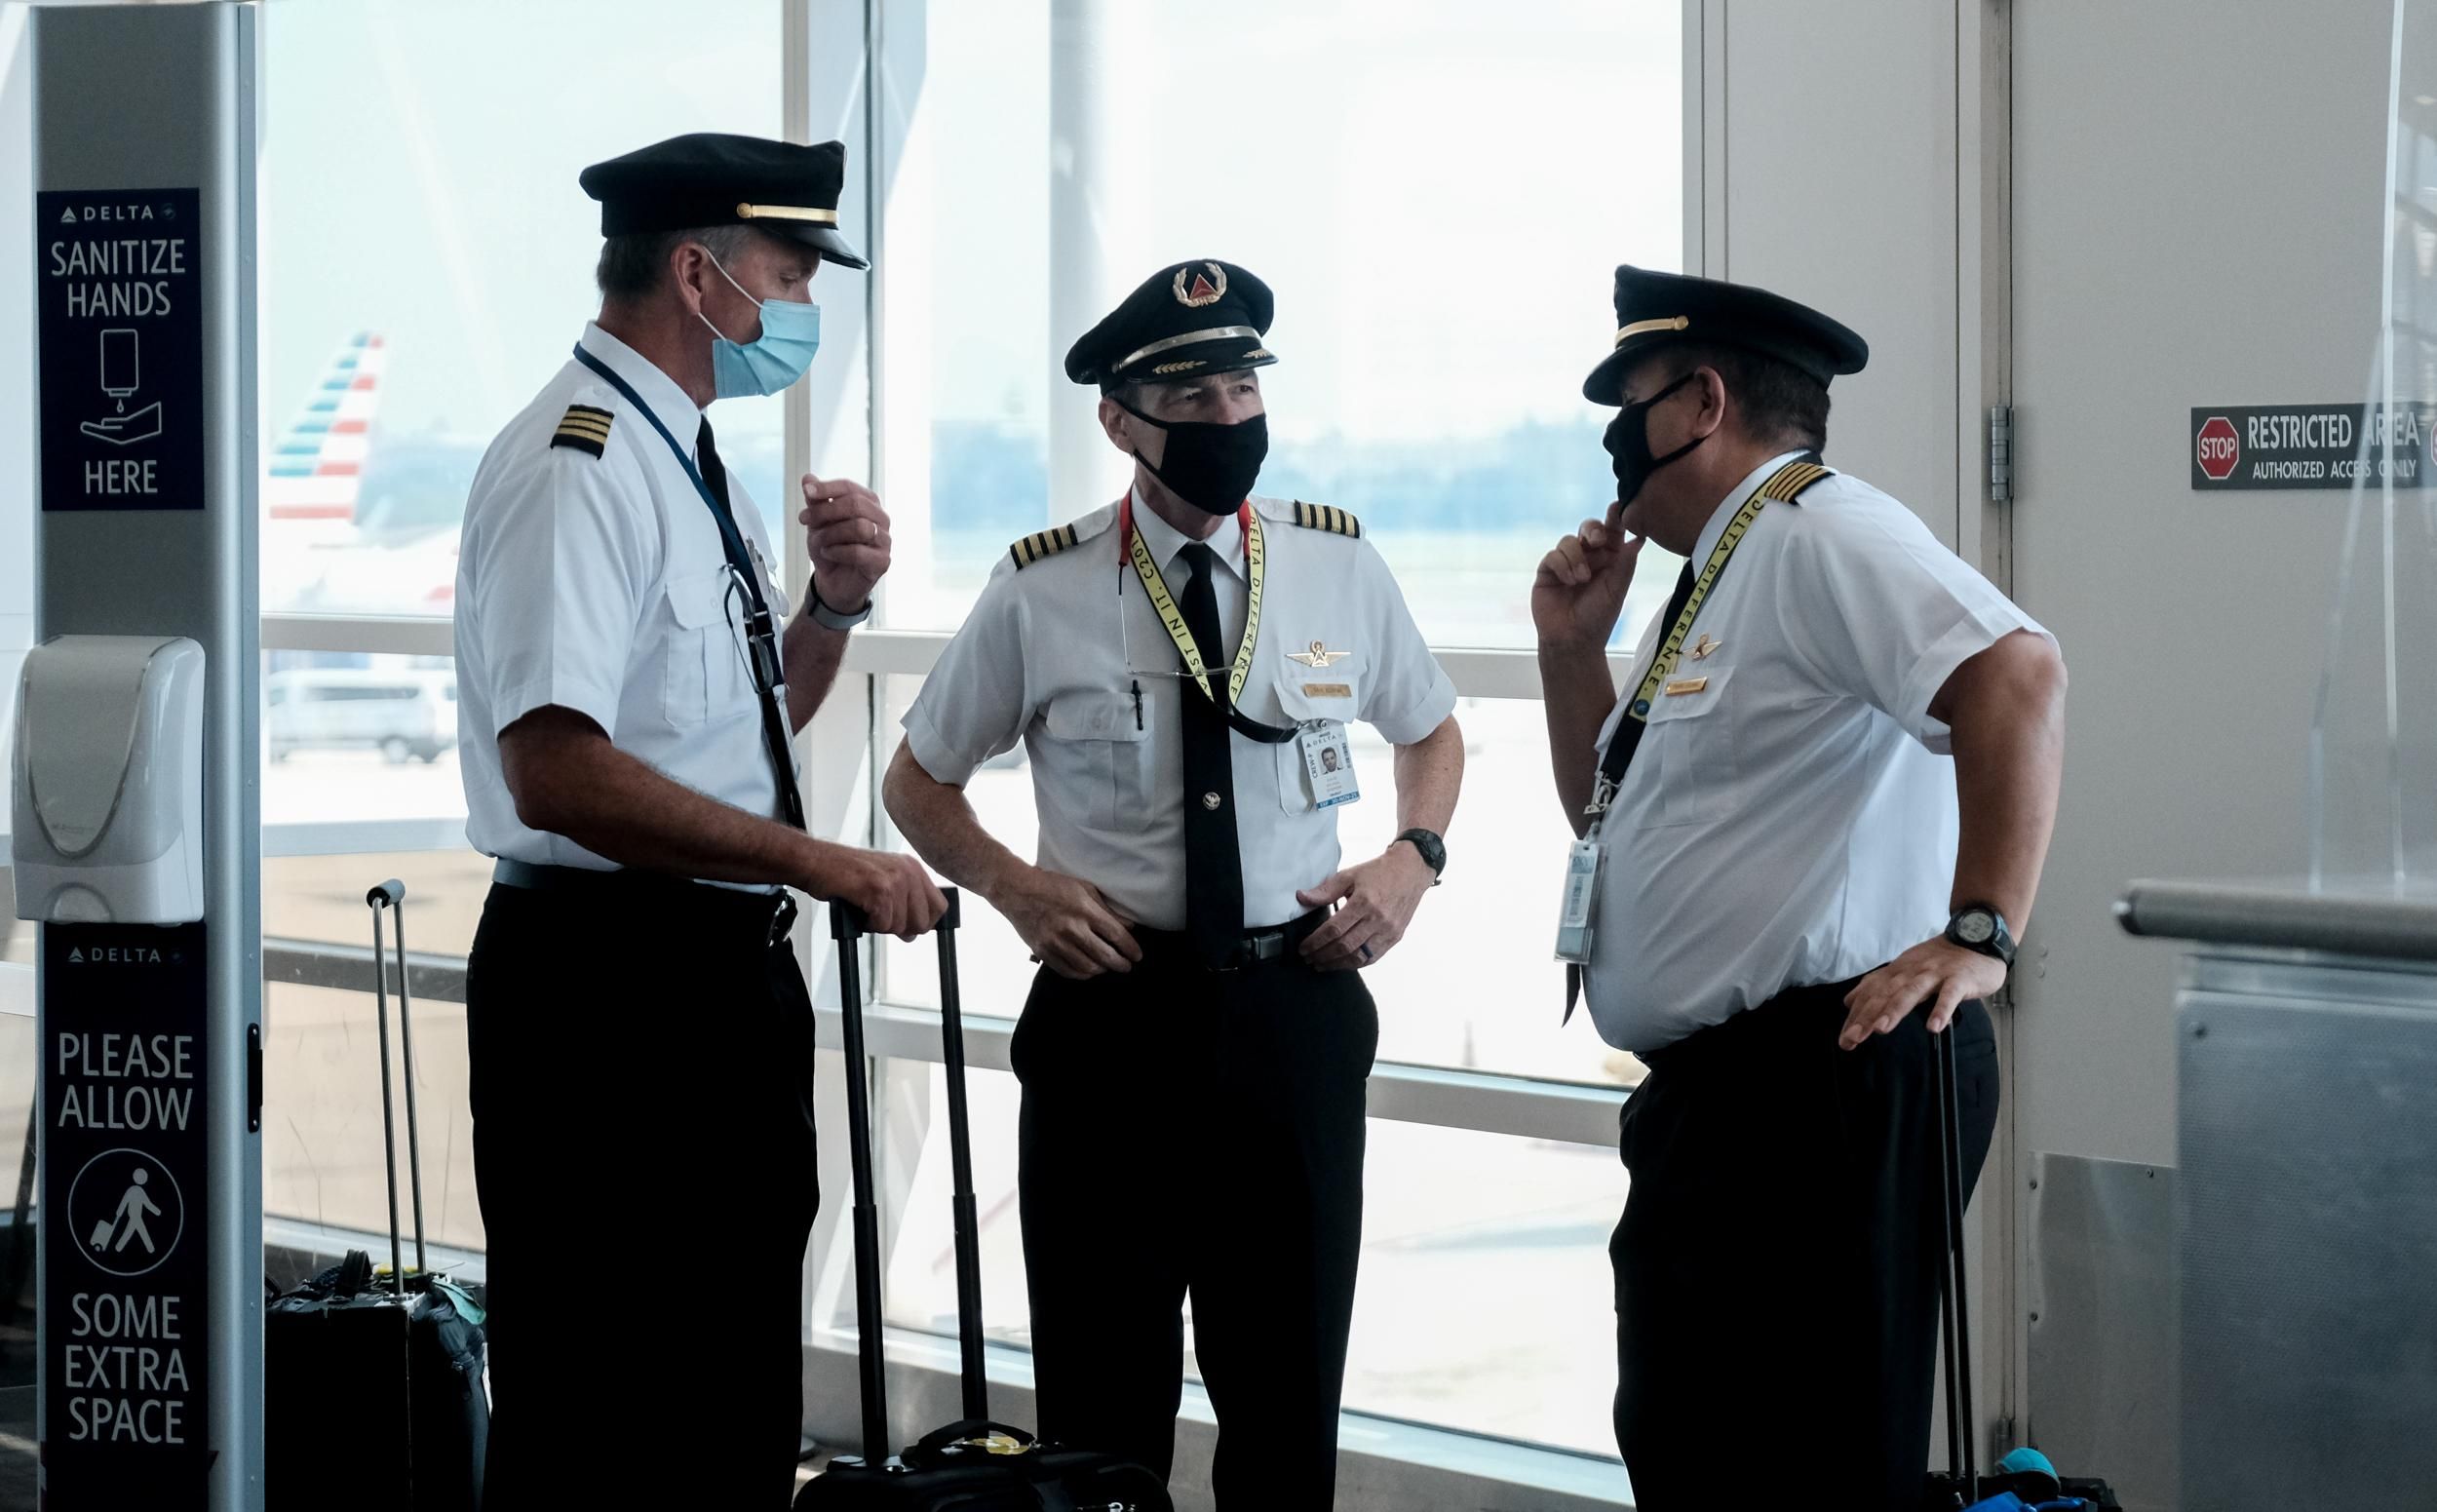 Pilots at an airport